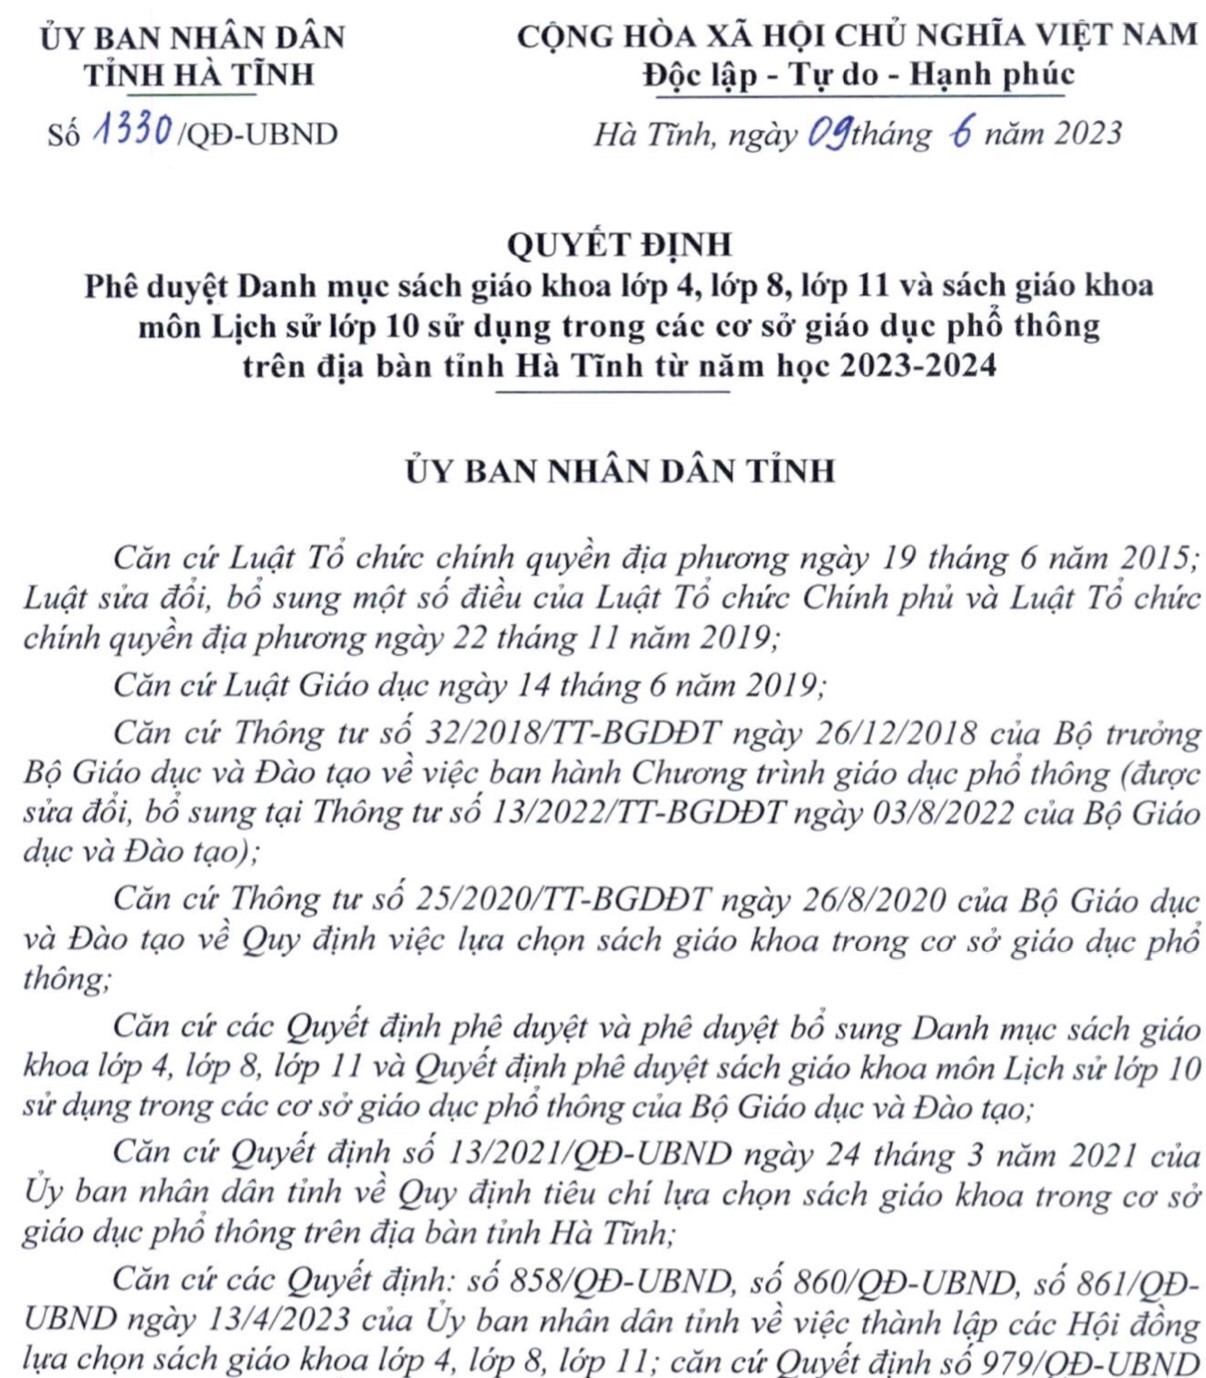 Quyết định số 1330QĐ-UBND ngày 0962023 của UBND tỉnh Hà Tĩnh